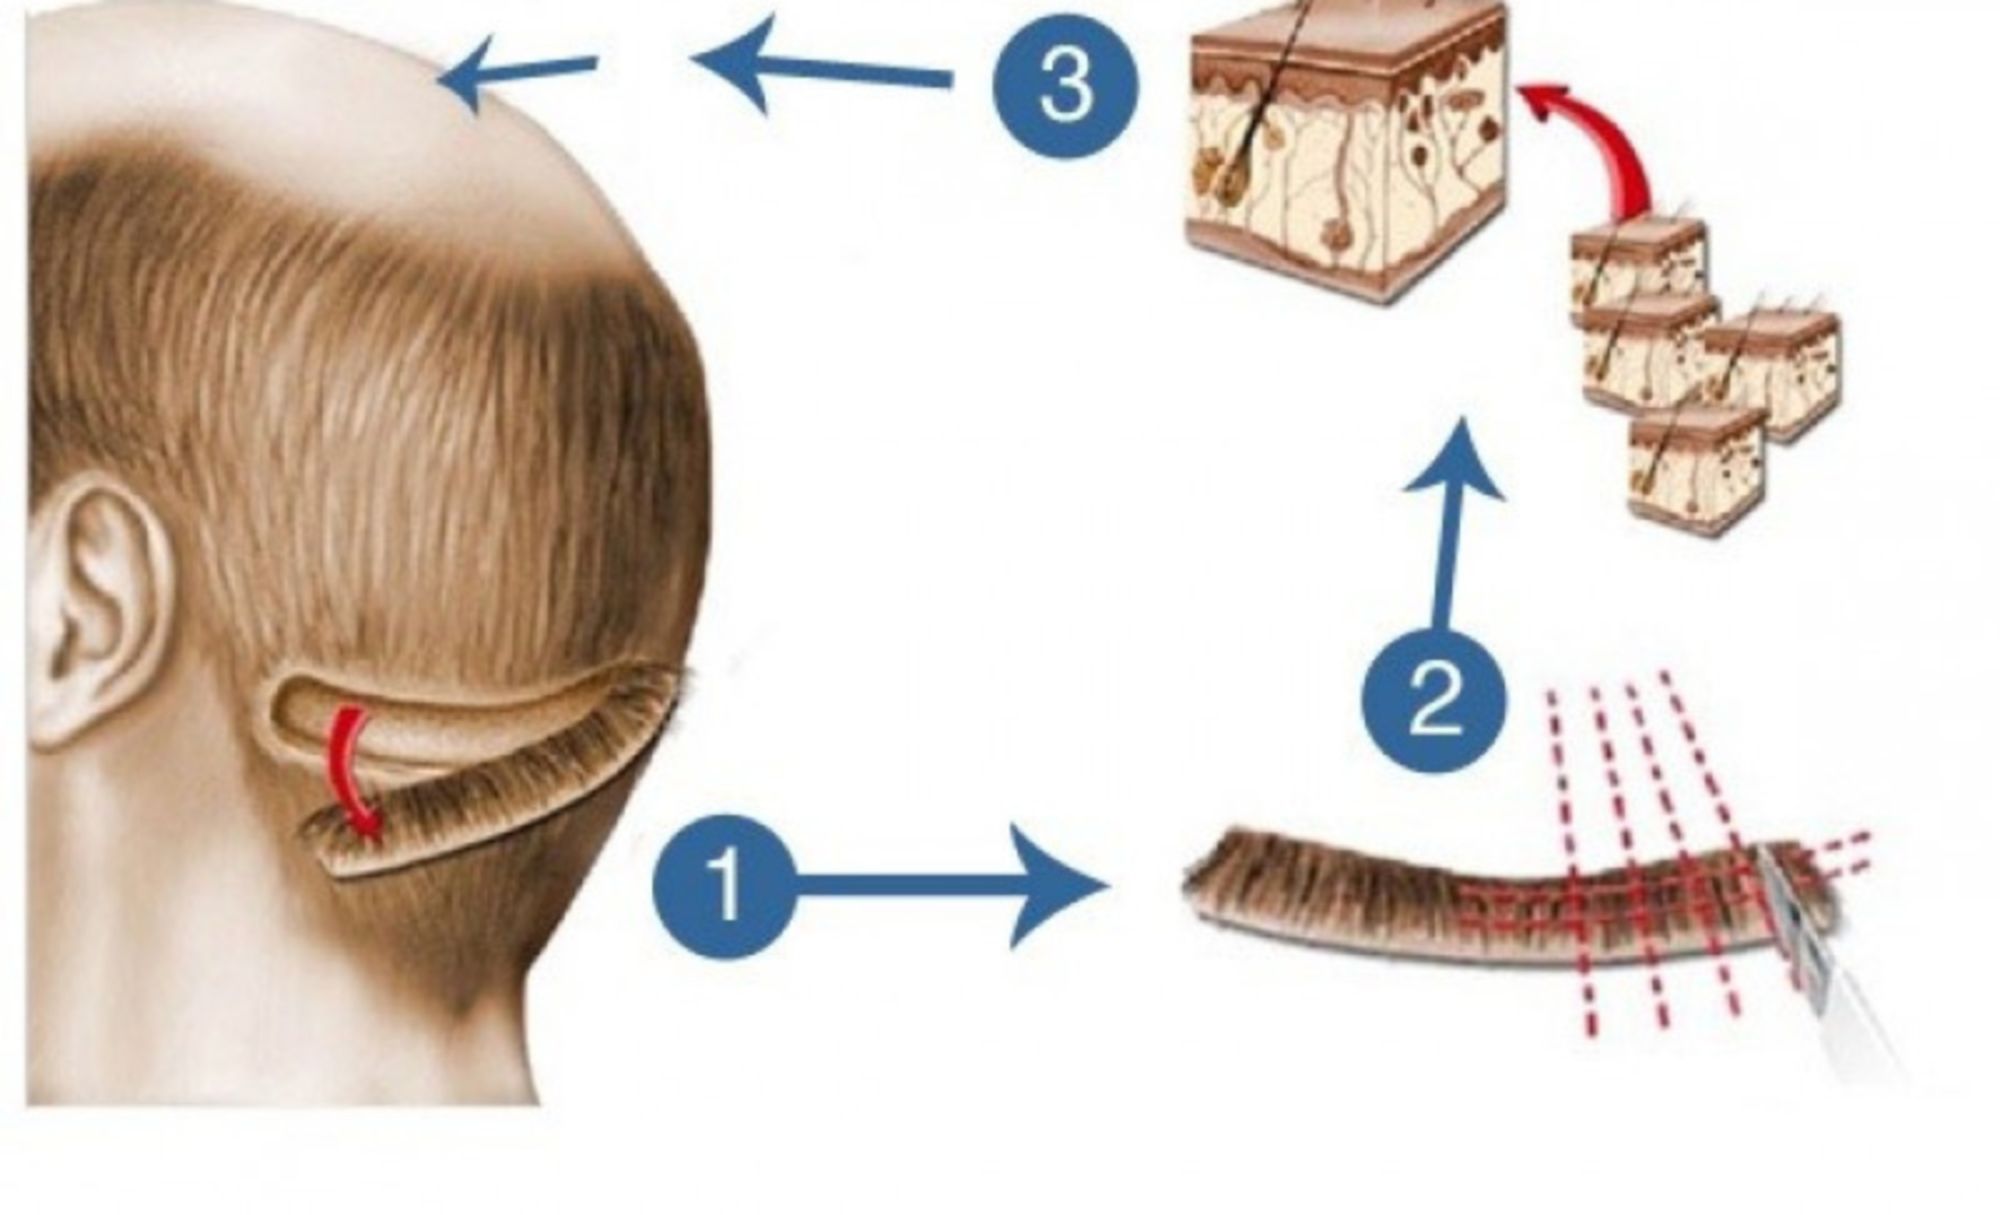 Cấy tóc FUT là gì, giá bao nhiêu và có gì khác so với các phương pháp cấy tóc vĩnh viễn khác?